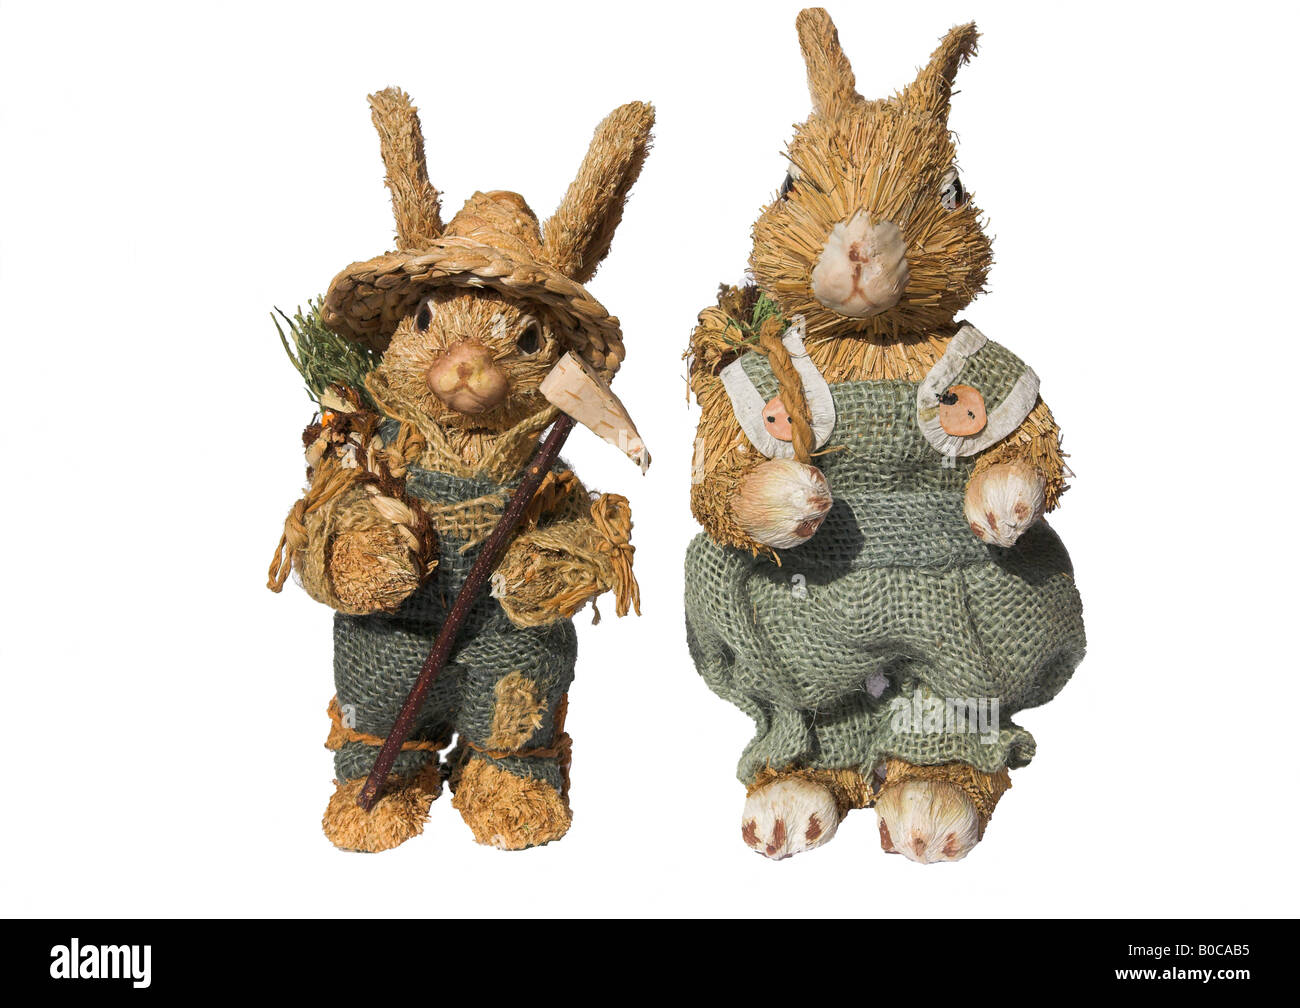 https://c8.alamy.com/comp/B0CAB5/hand-made-straw-rabbit-toys-B0CAB5.jpg